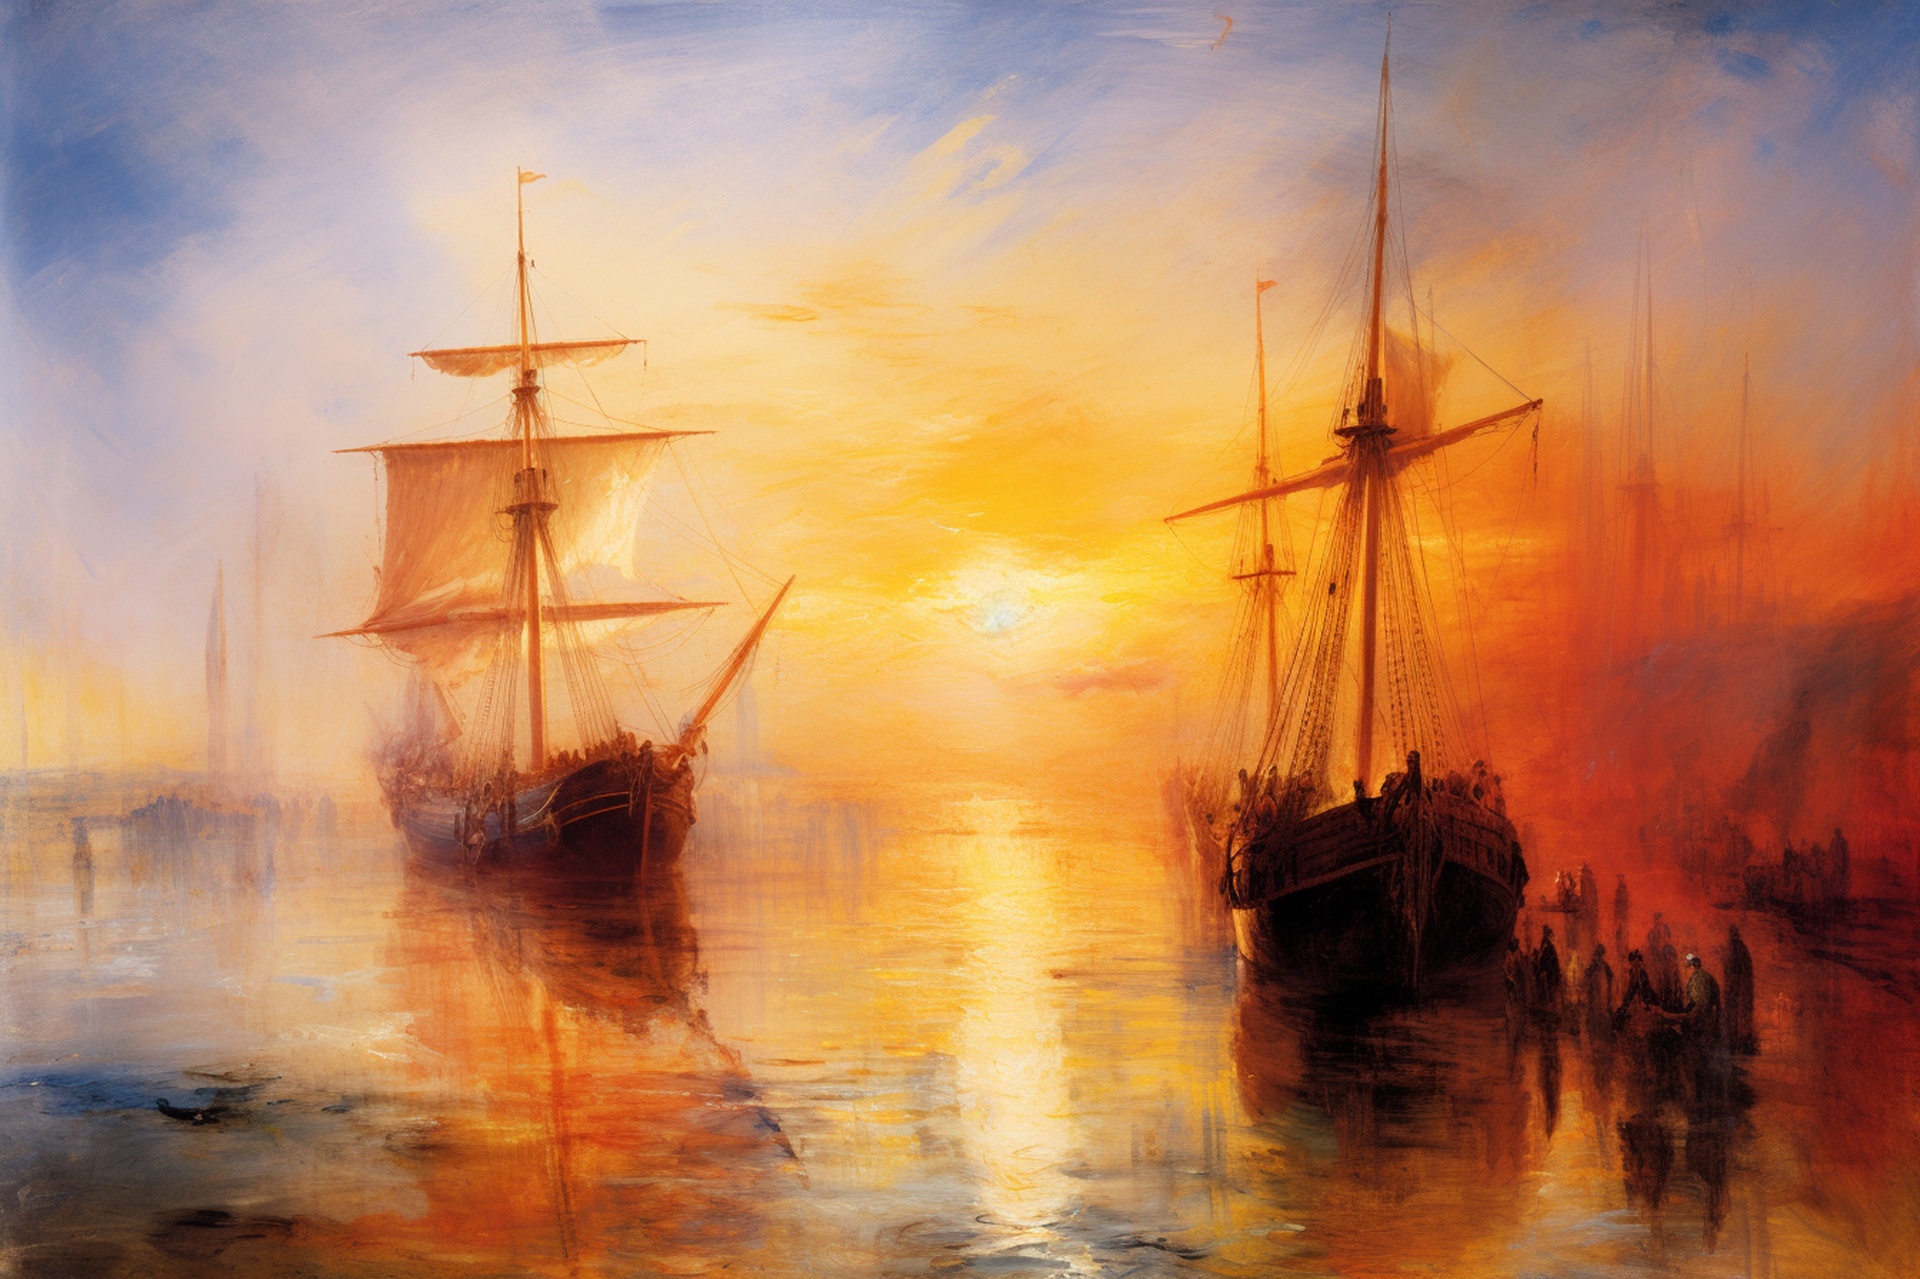 Turner's Coastal Imagination